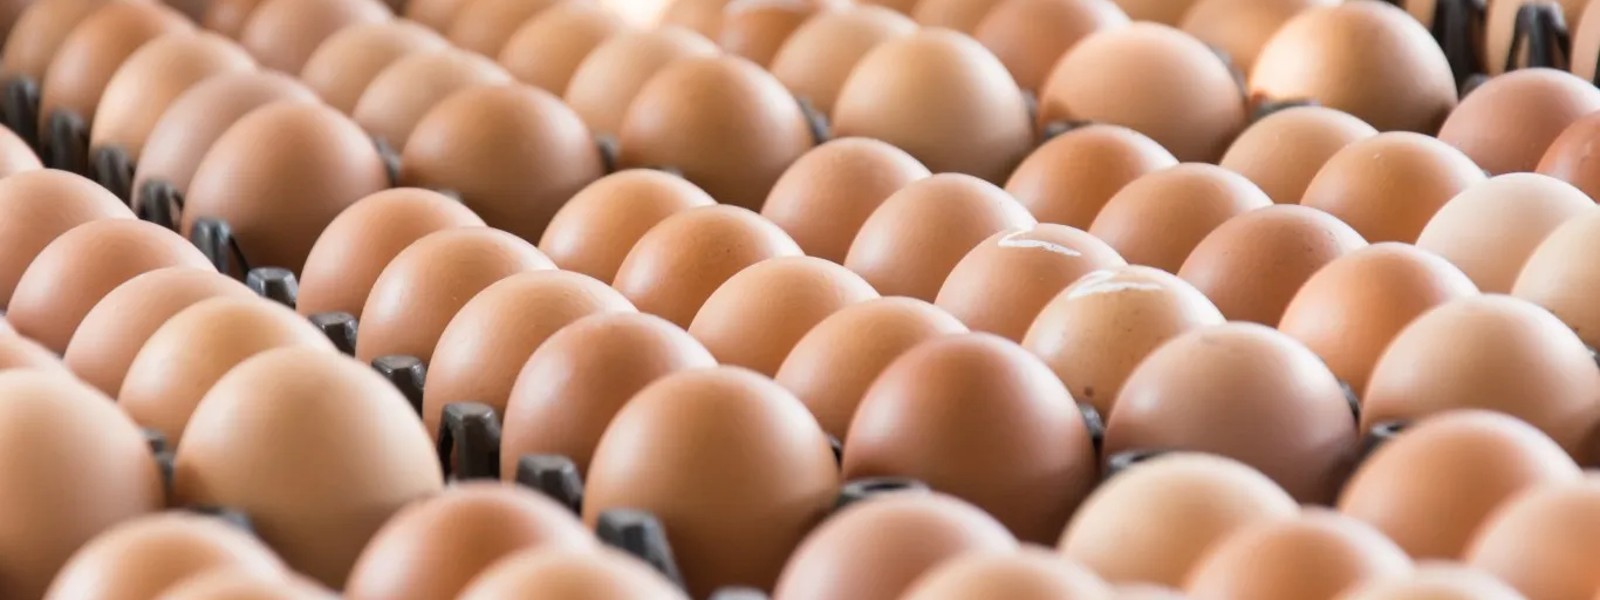 MRP for eggs, gazette issued